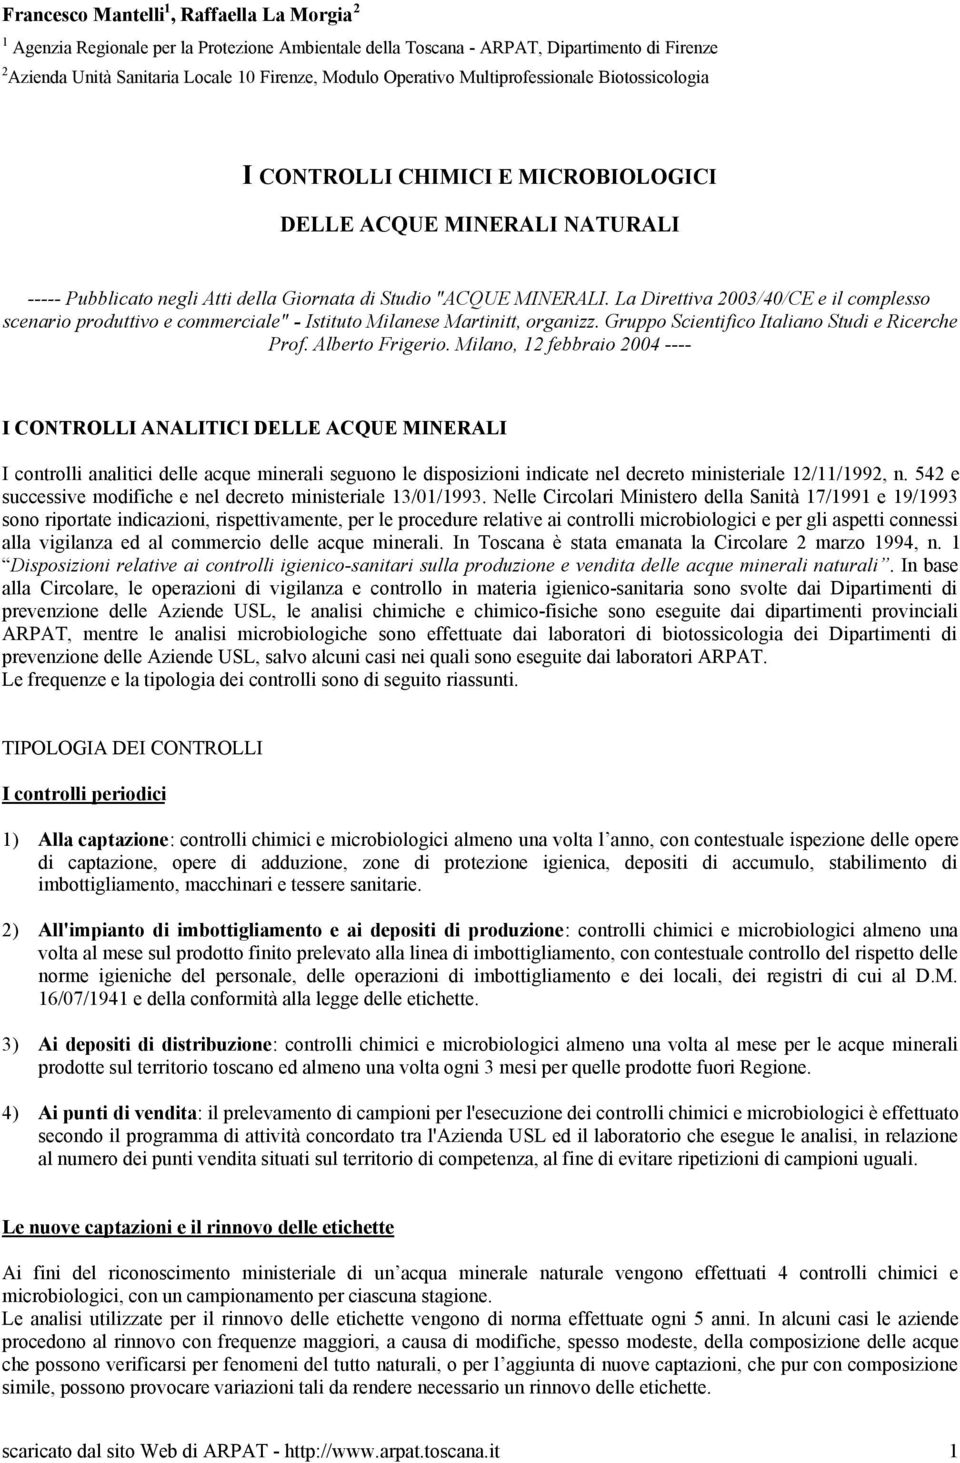 La Direttiva 2003/40/CE e il complesso scenario produttivo e commerciale" - Istituto Milanese Martinitt, organizz. Gruppo Scientifico Italiano Studi e Ricerche Prof. Alberto Frigerio.